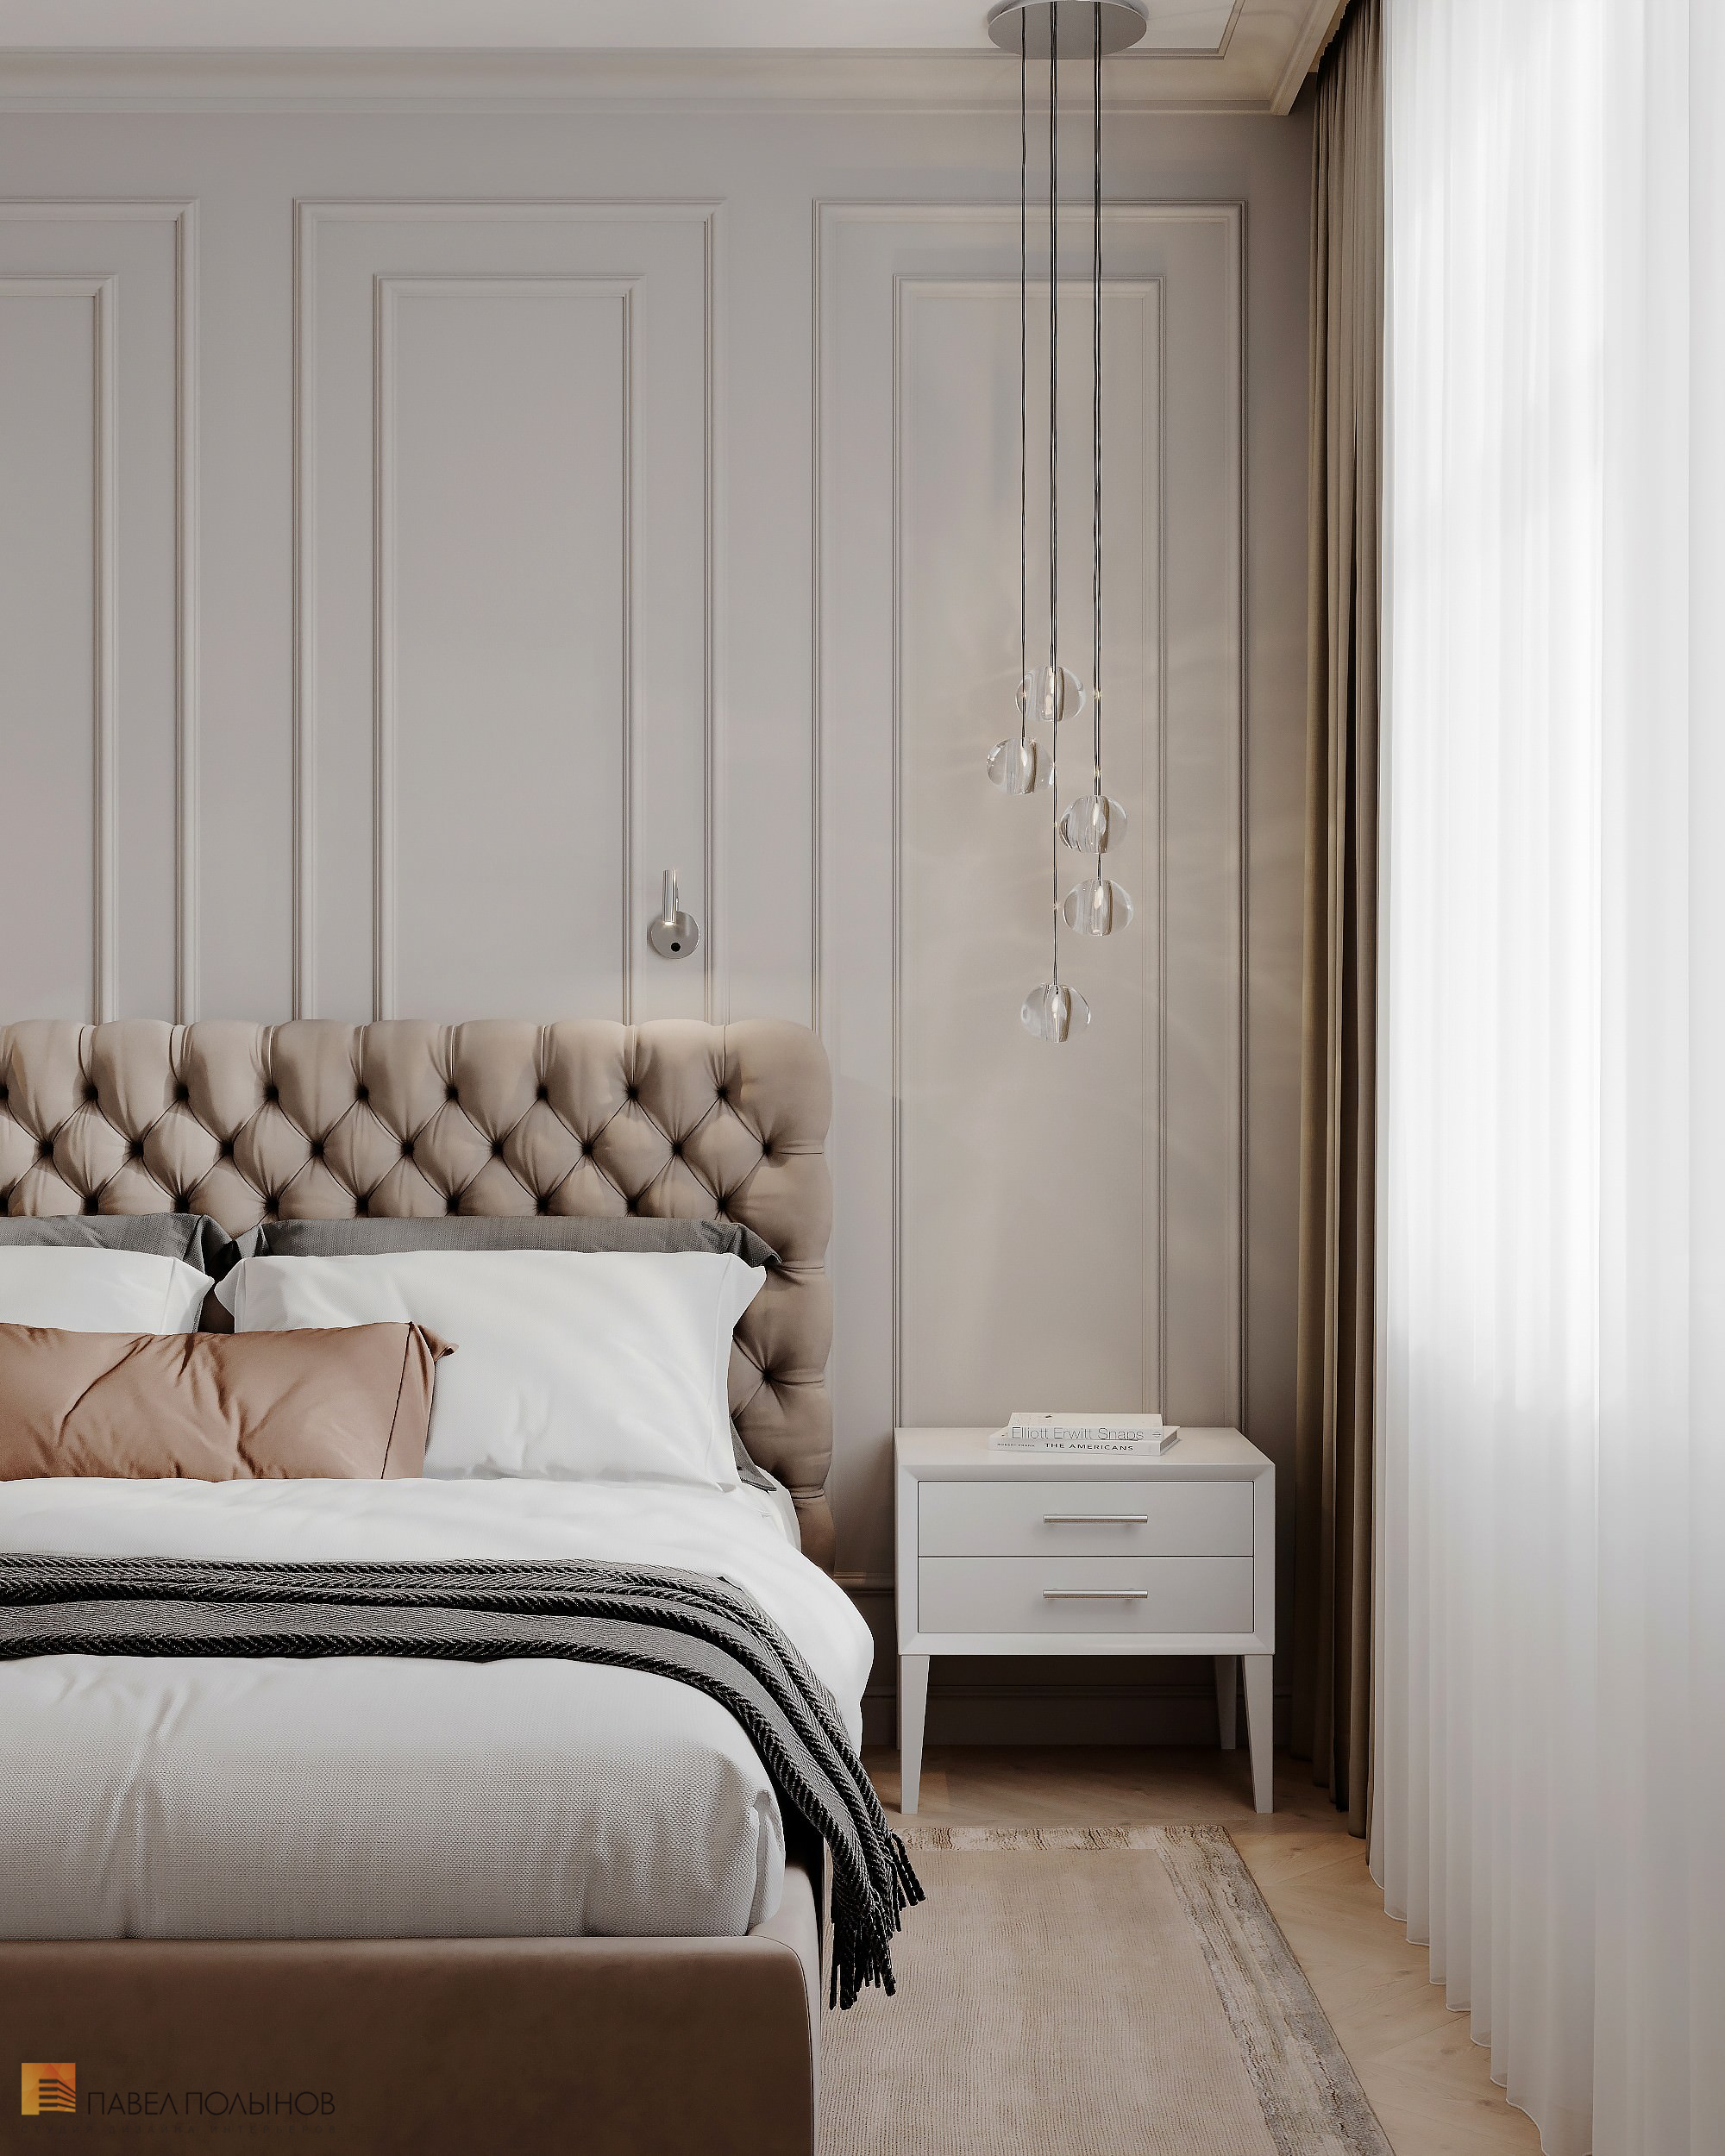 Фото дизайн интерьера спальни из проекта «Квартира в стиле неоклассики, ЖК «Алые Паруса», 124 кв.м.»